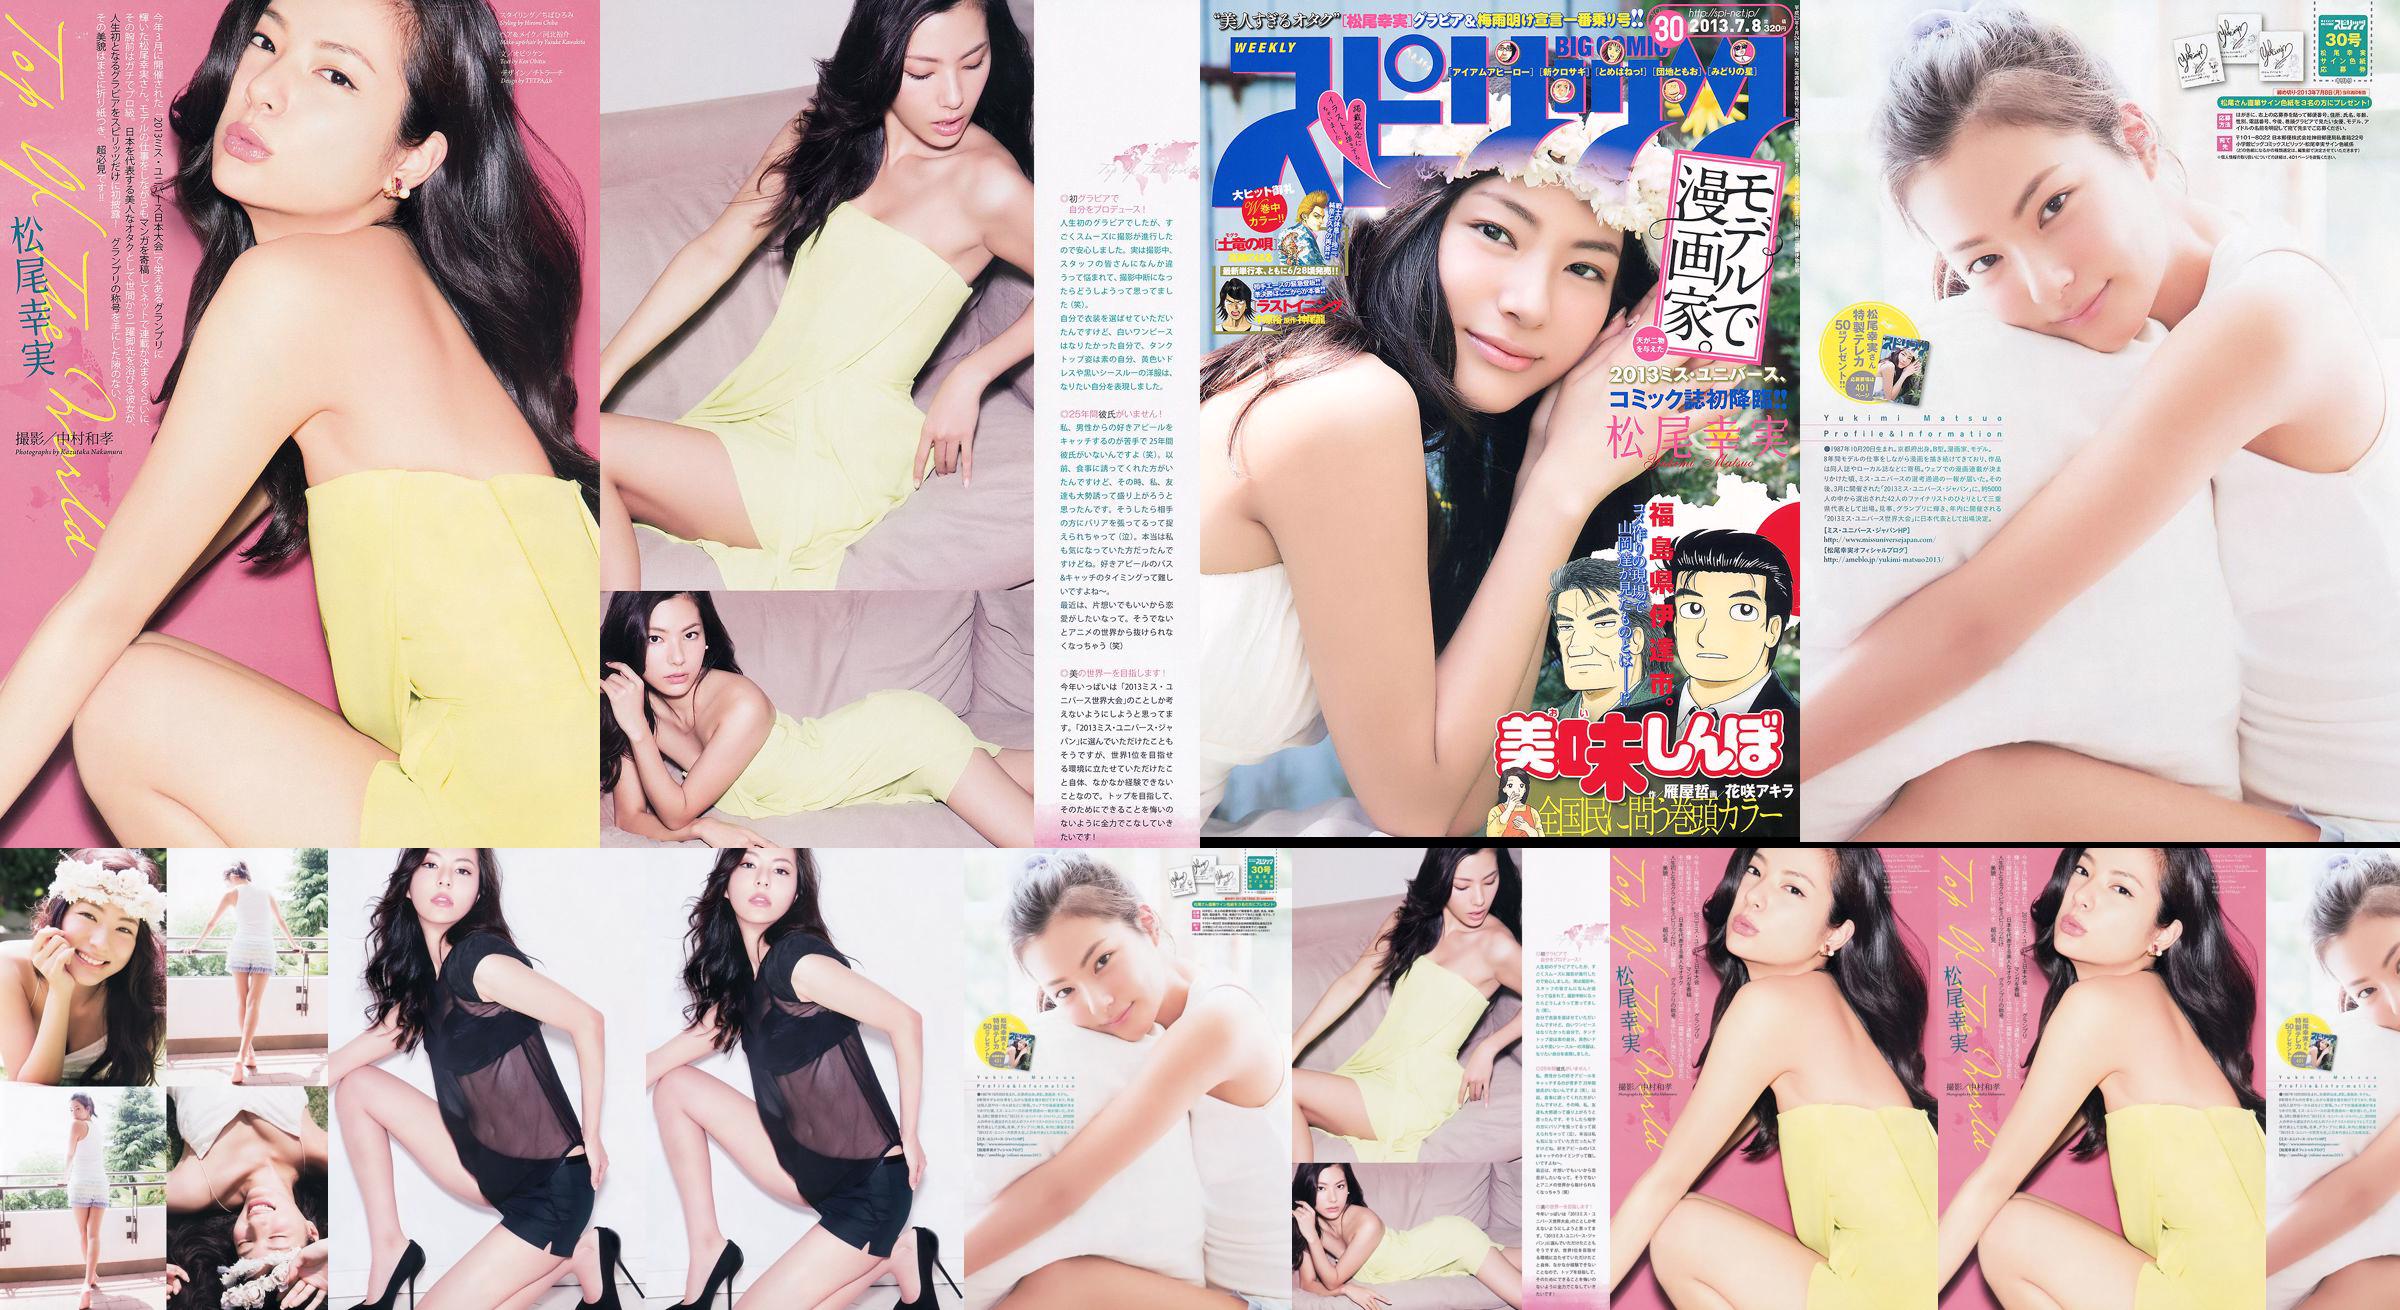 [Weekly Big Comic Spirits] Komi Matsuo 2013 No.30 Photo Magazine No.45a664 Pagina 2